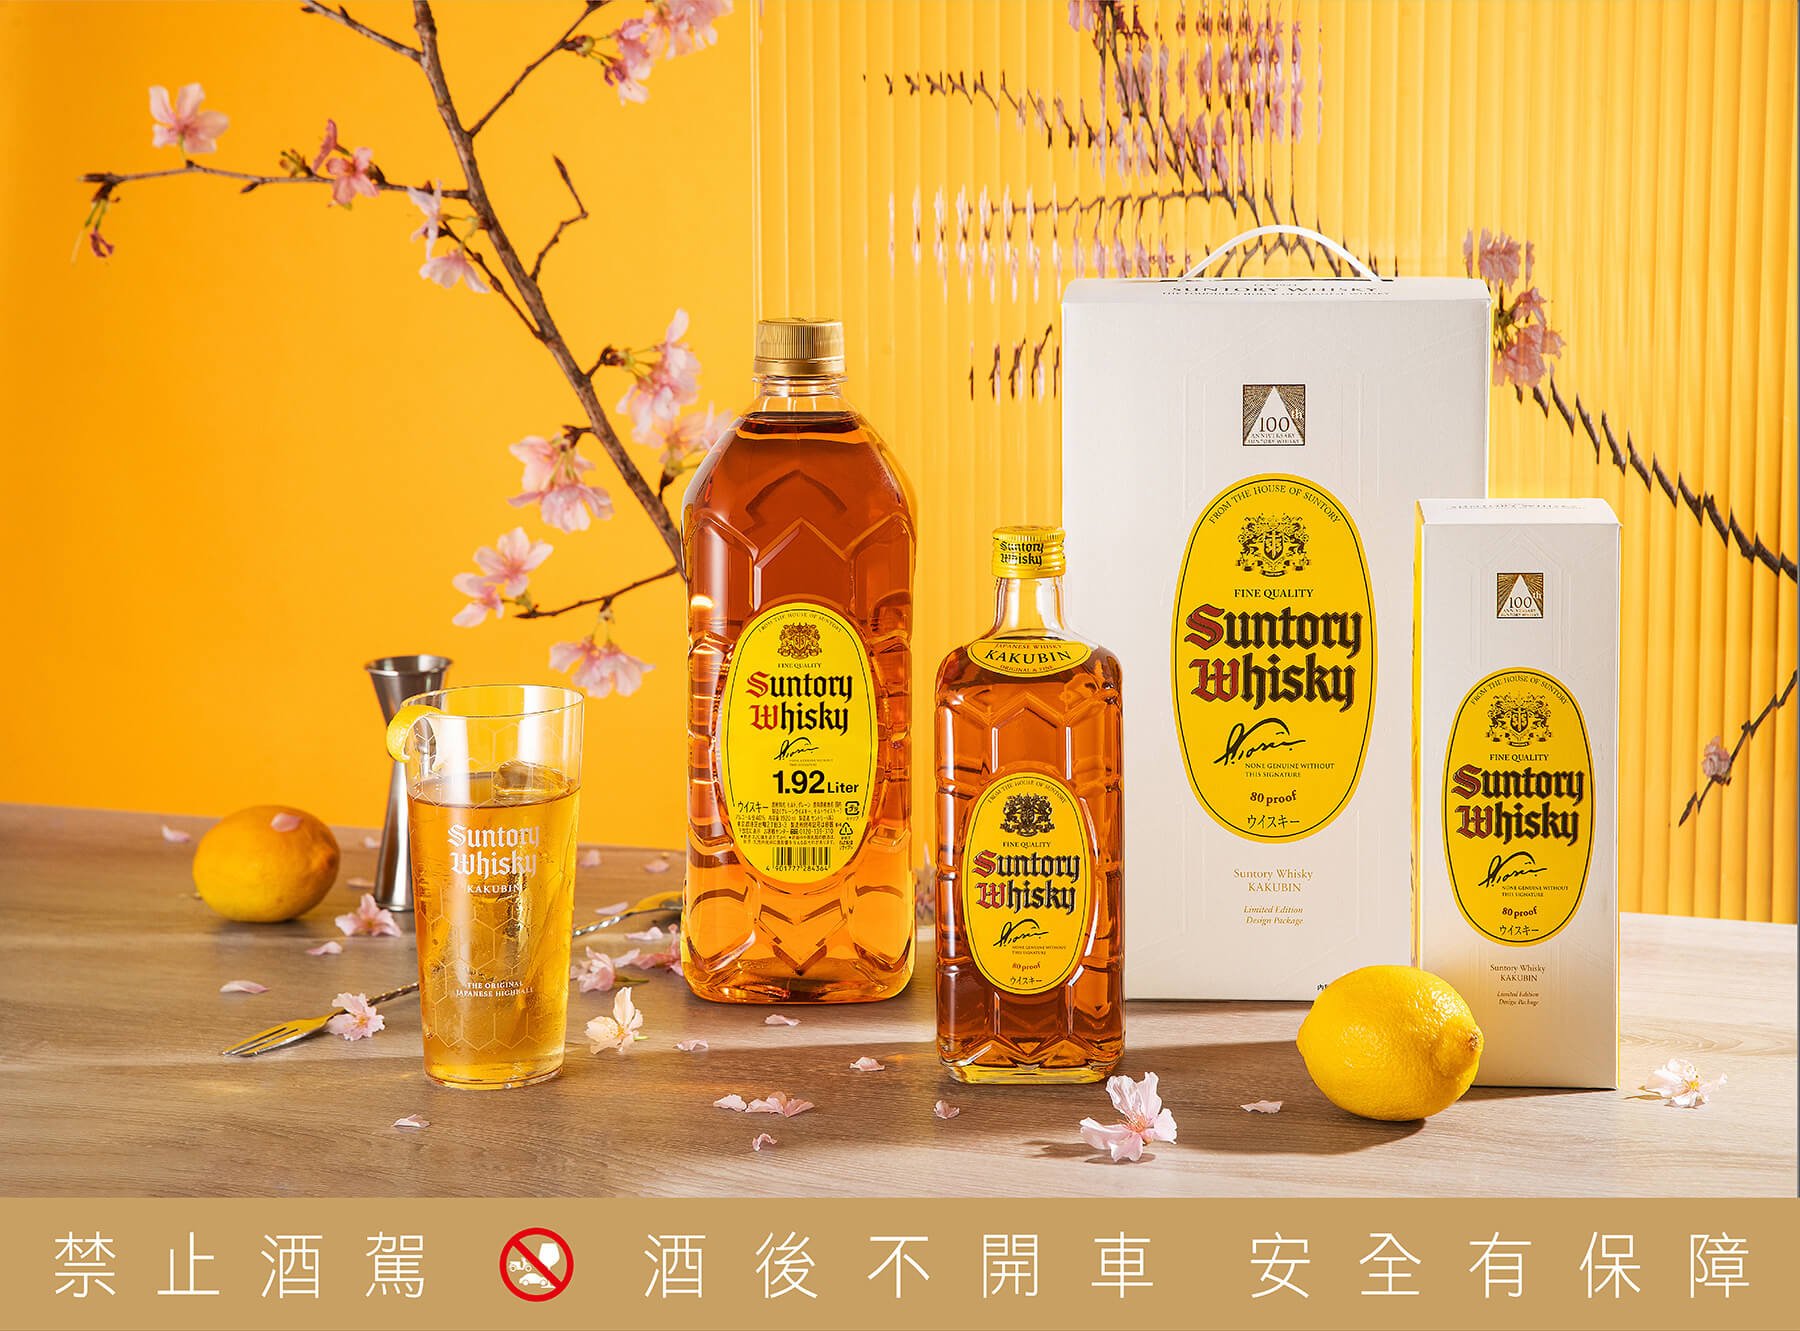 三得利威士忌百週年 紀念新裝台灣首發限定登場